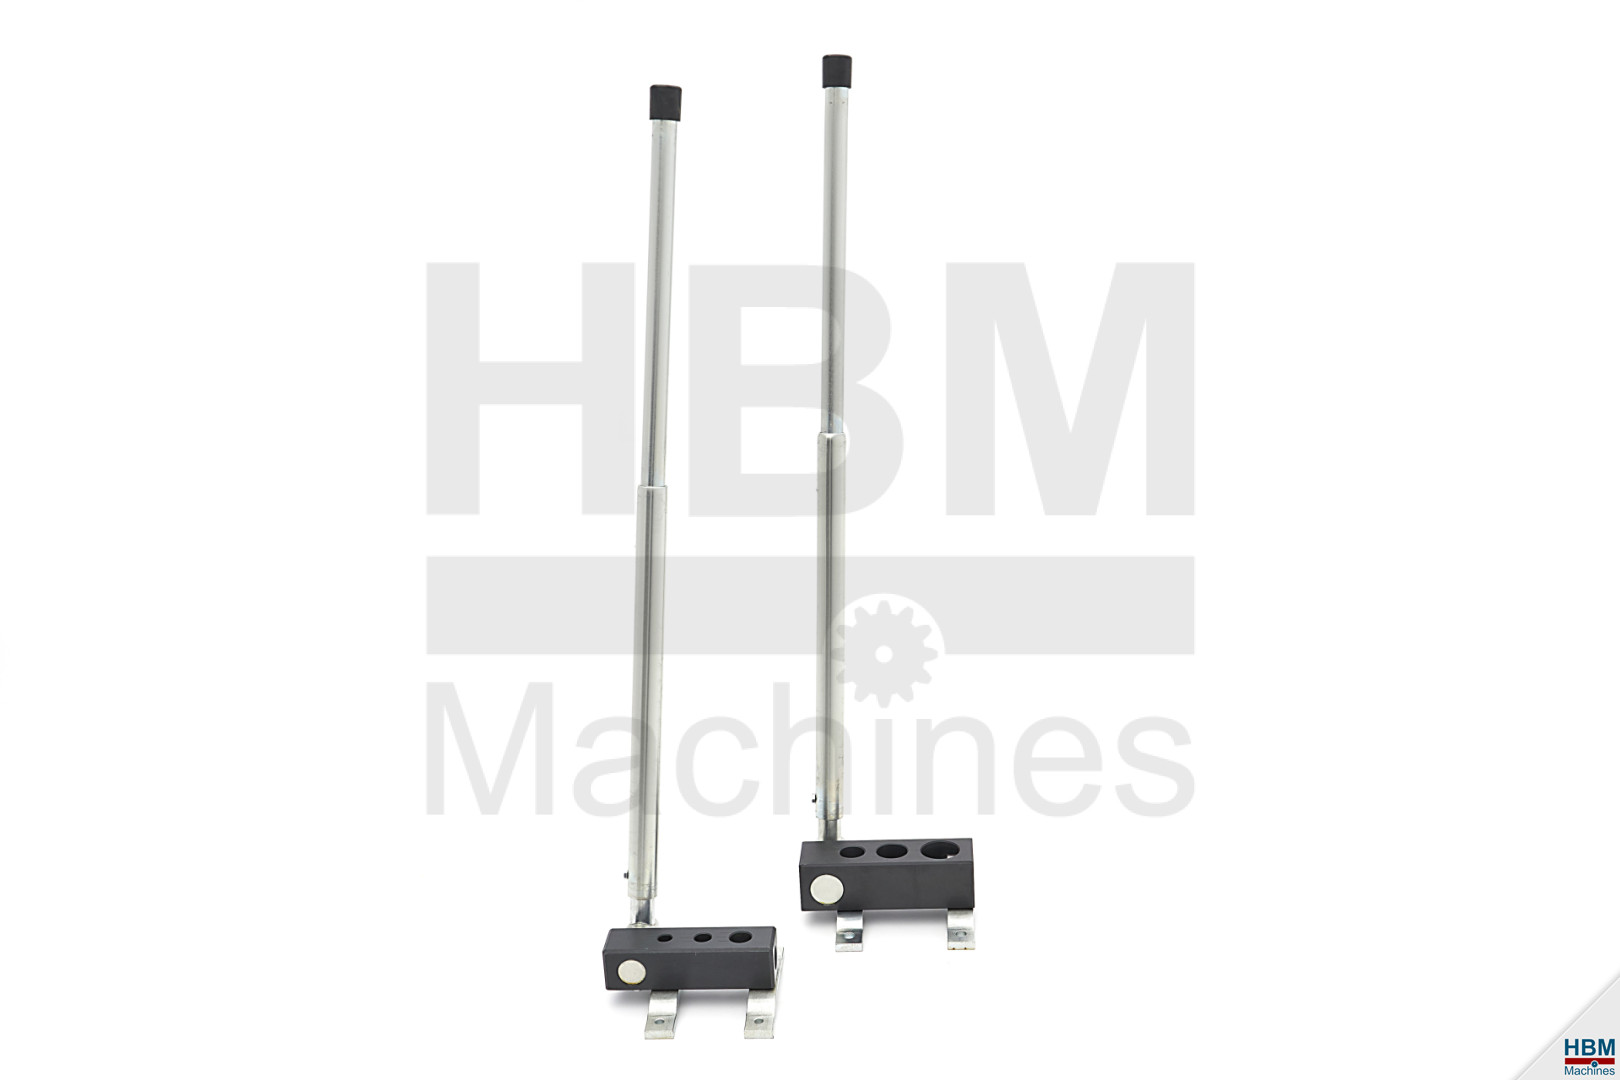 HBM 3 - 30 mm. Mini-Rohrschneider - Rohrschneider 